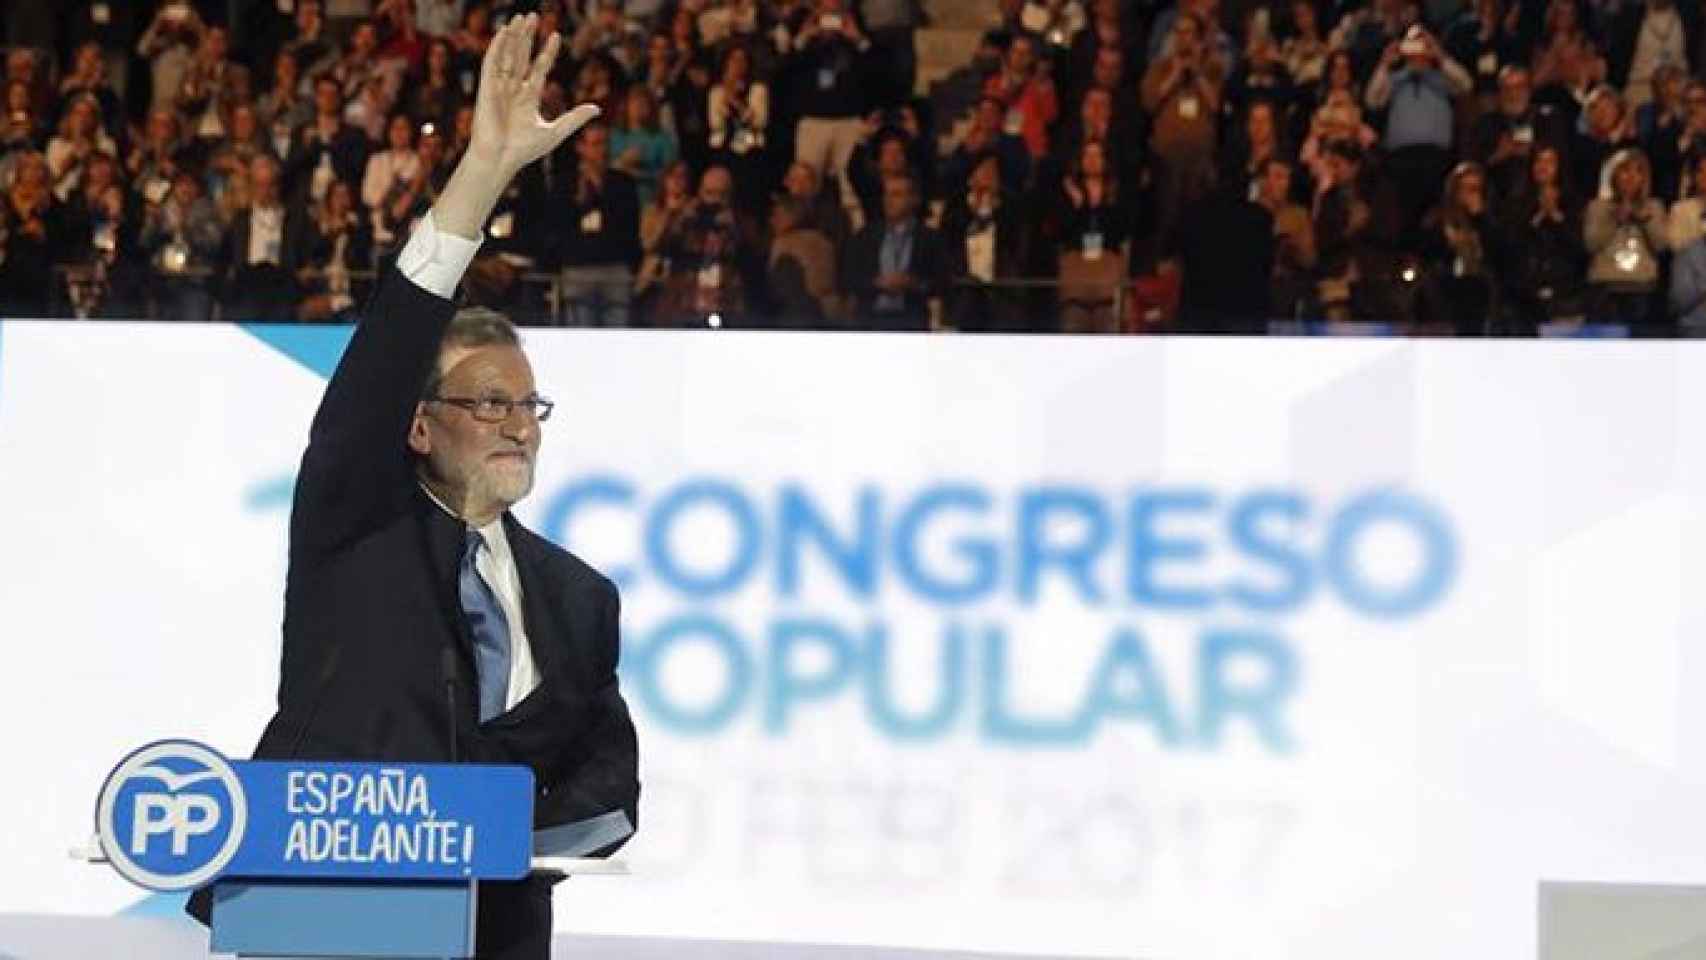 El líder del PP, Mariano Rajoy, durante su discurso de presentación de candidatura / EFE